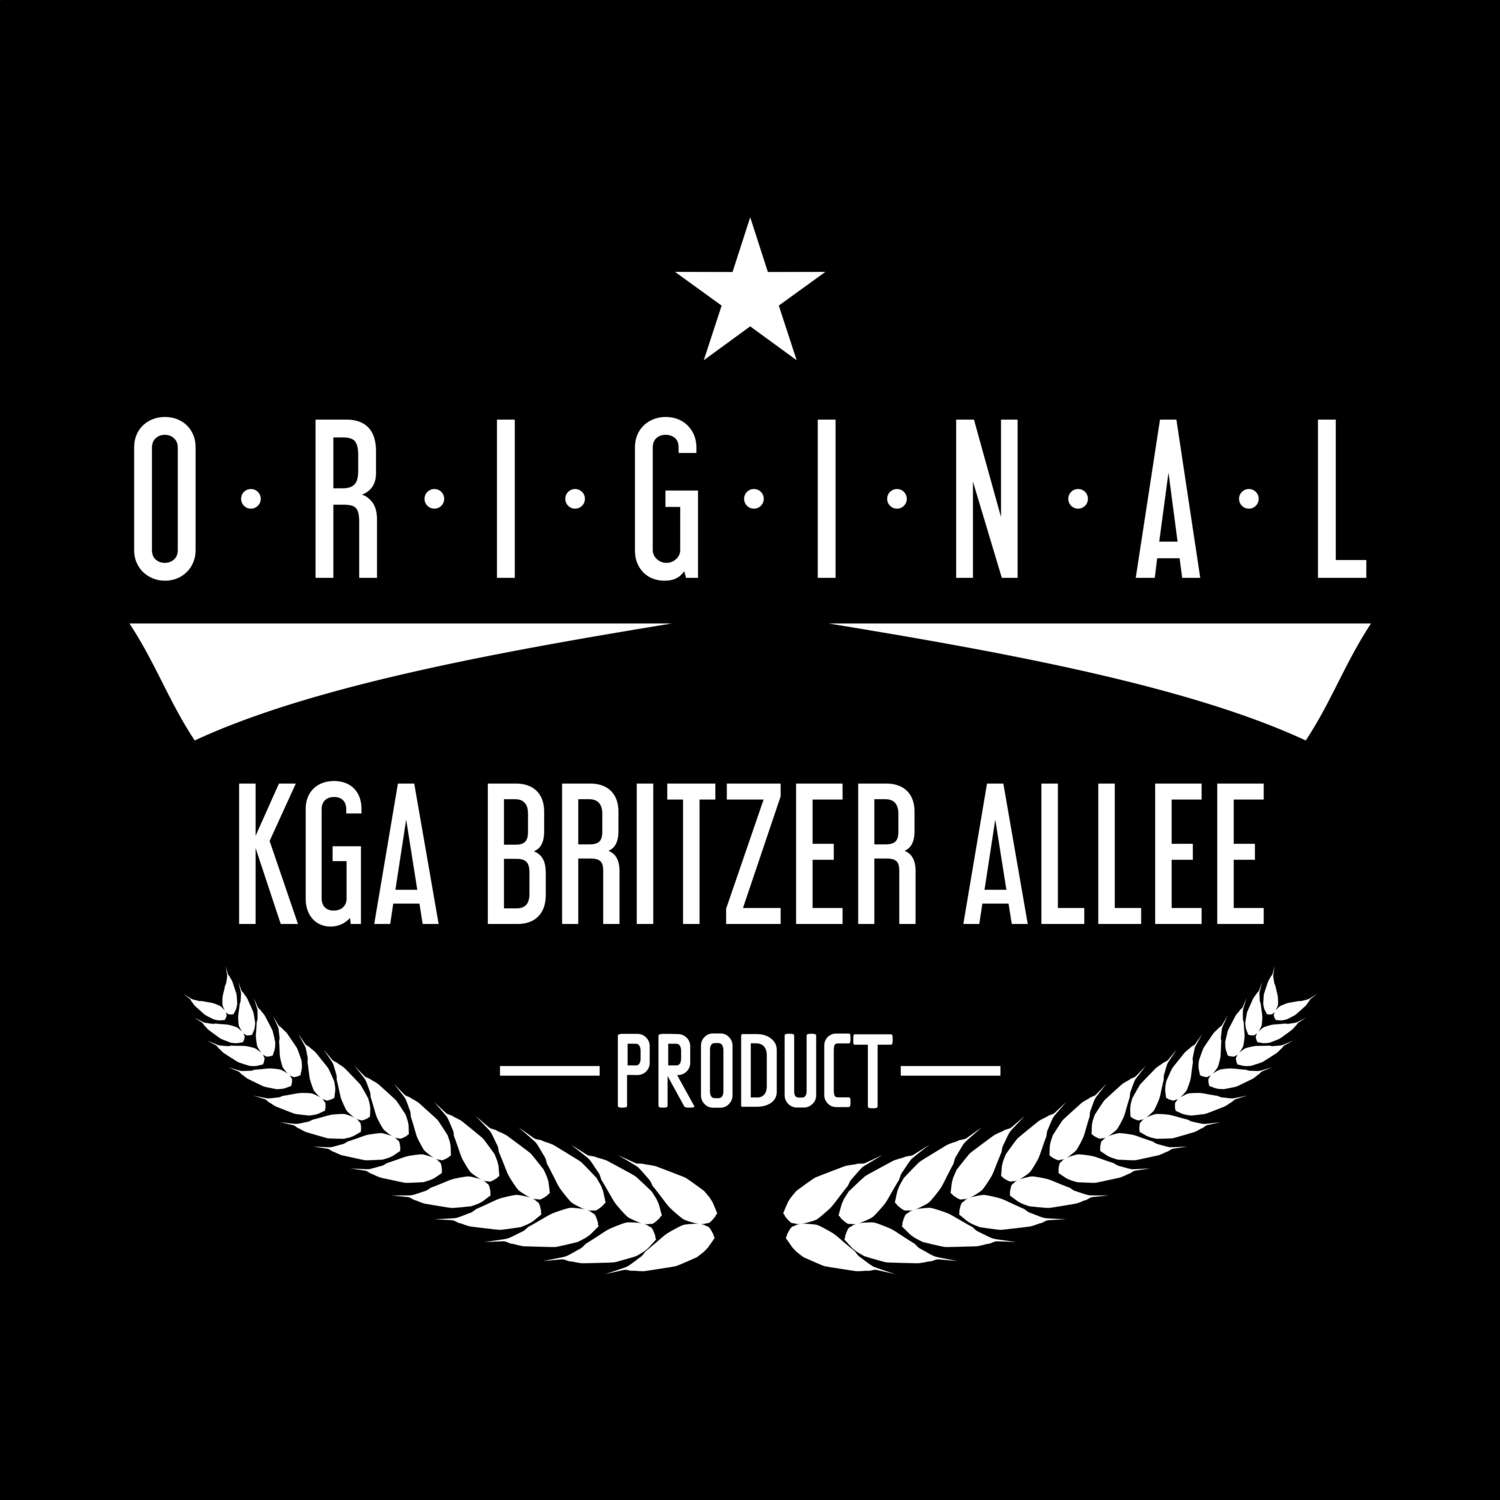 KGA Britzer Allee T-Shirt »Original Product«